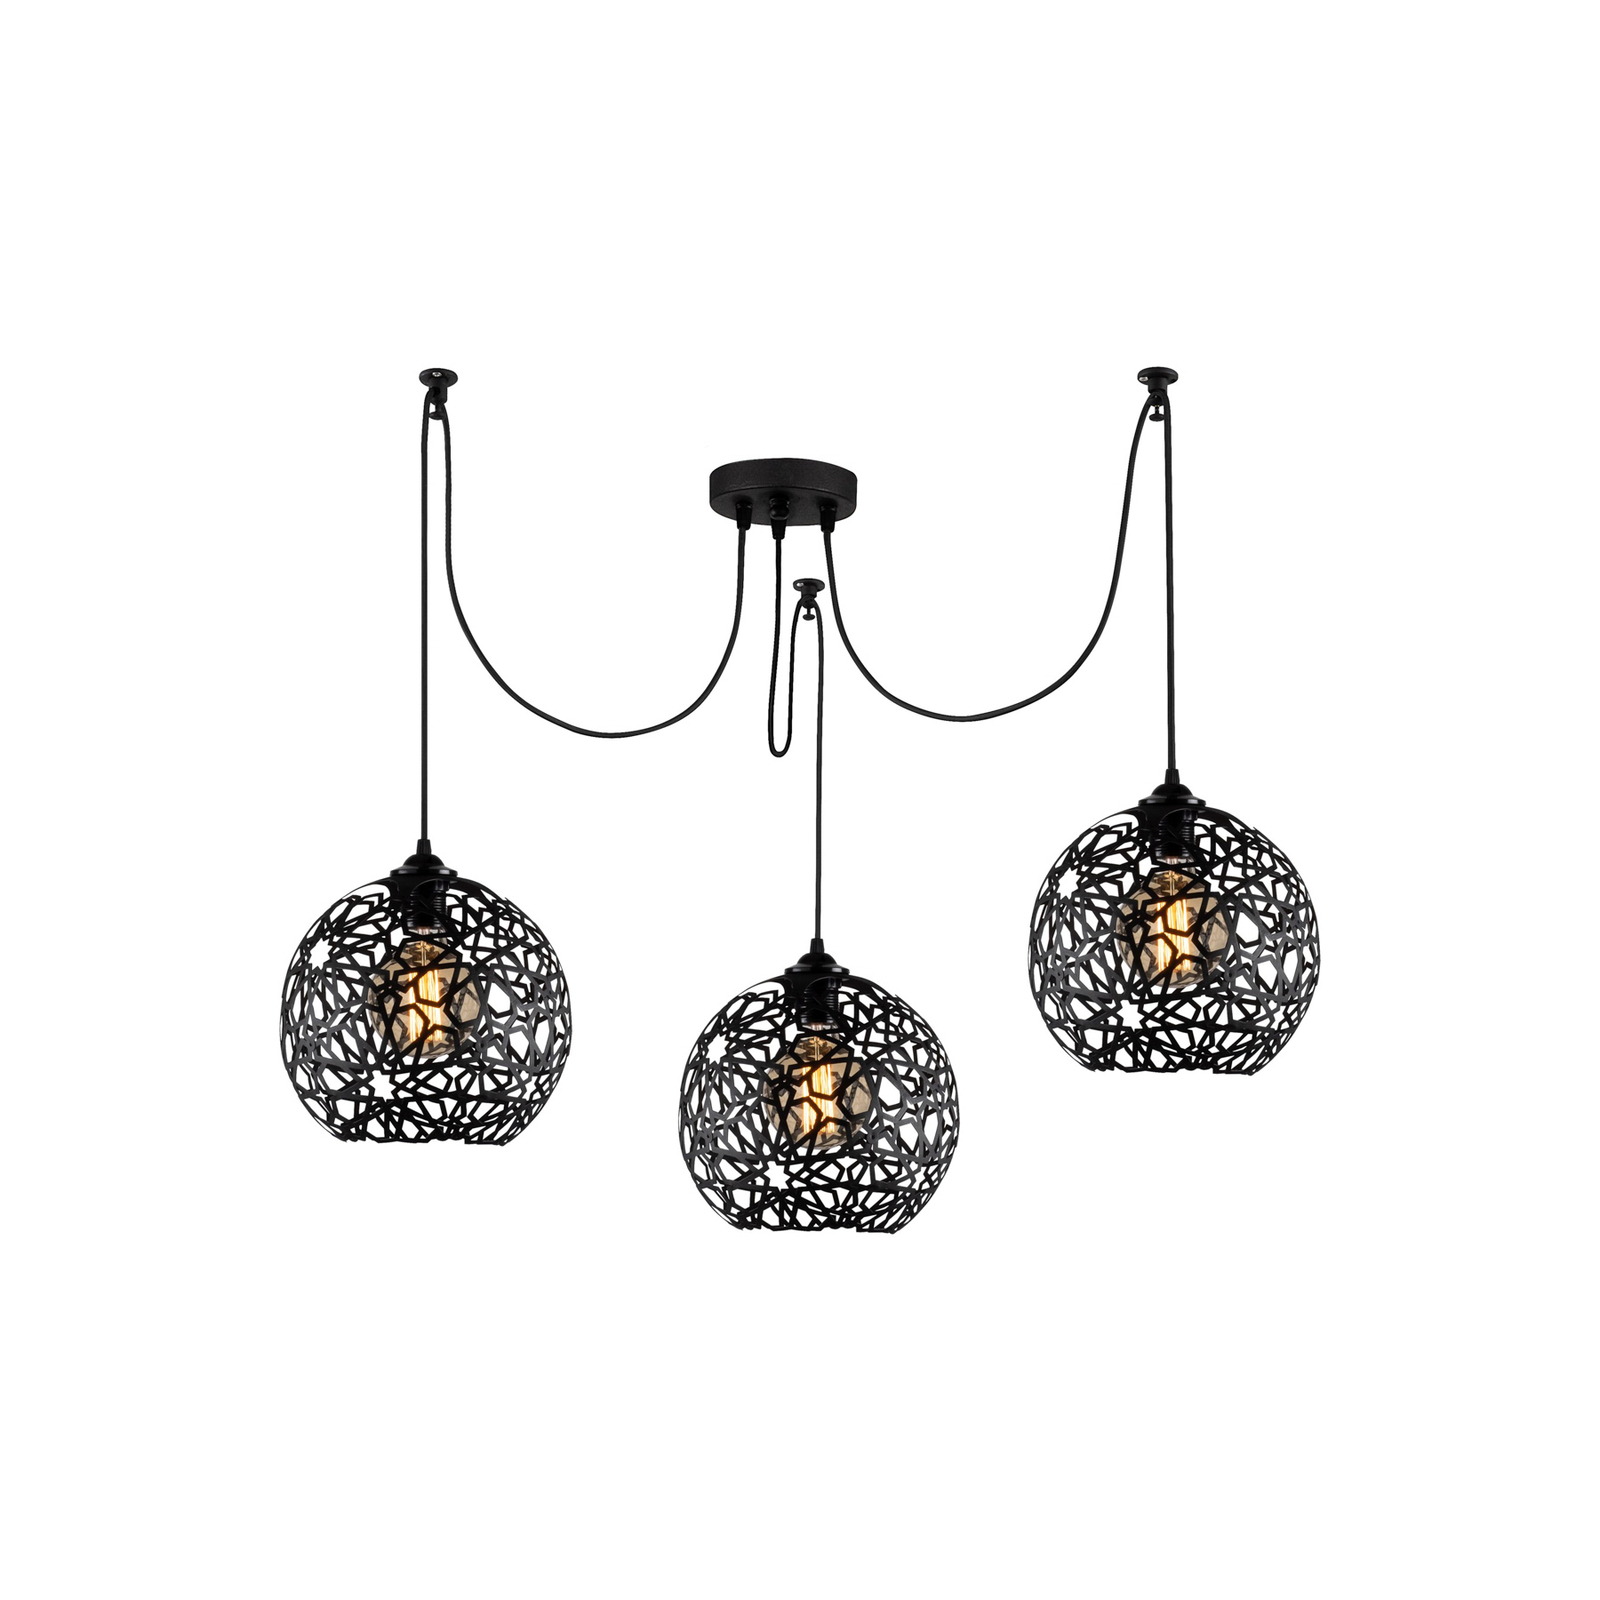 Hanglamp Fellini MR-897 3-lamps decentraal zwart